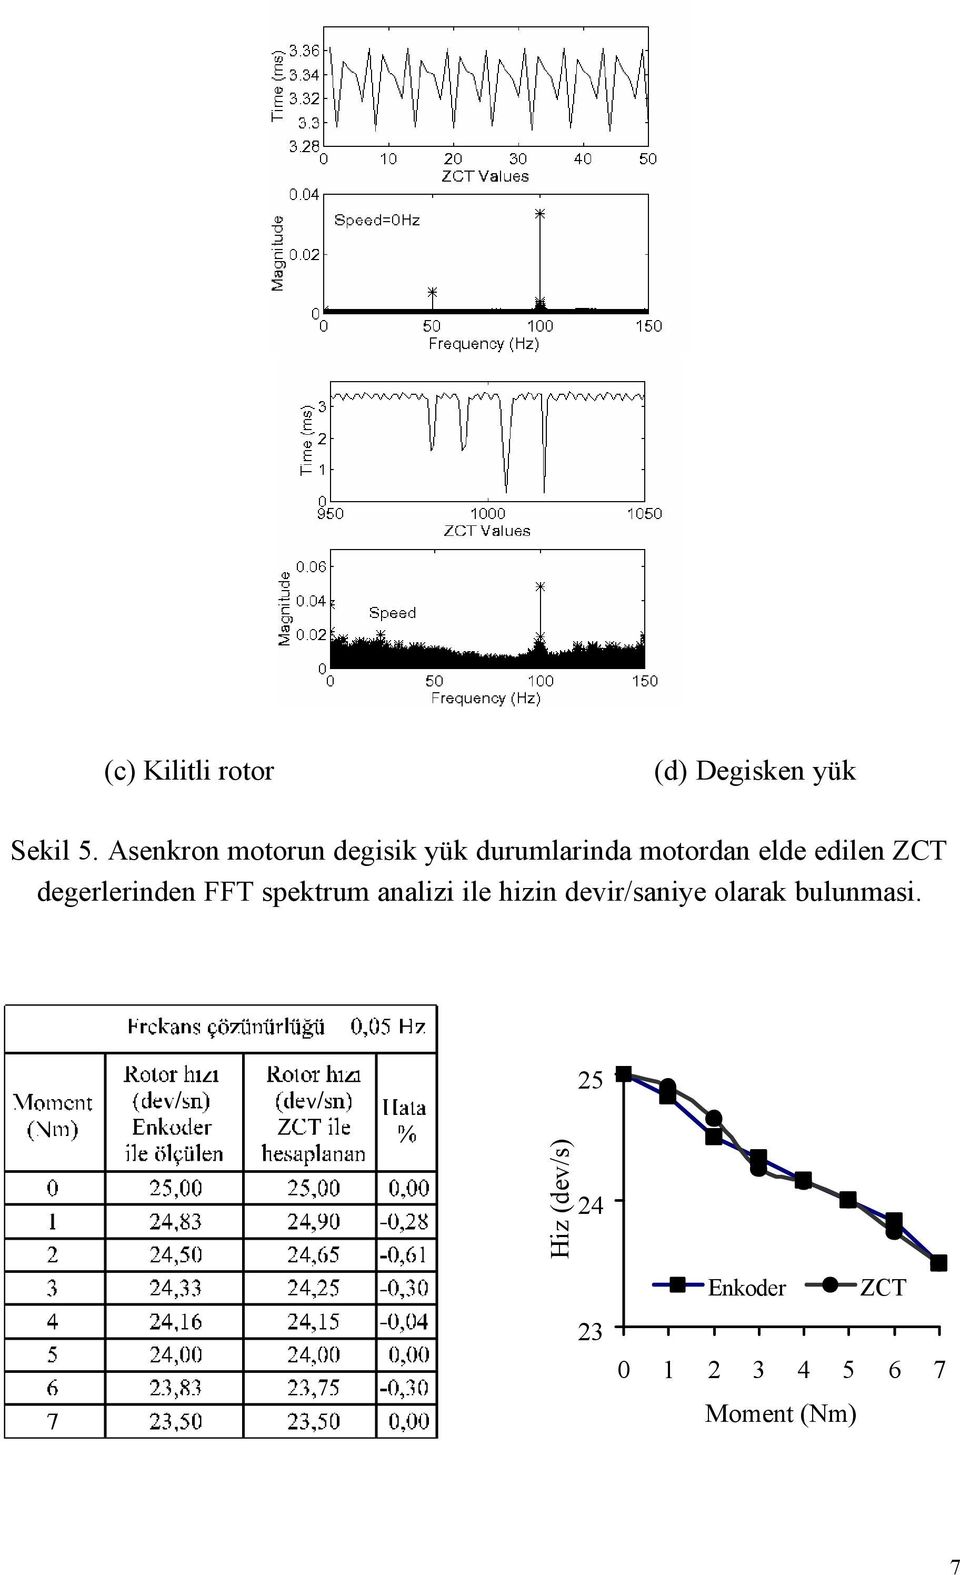 ZCT degerlerinden FFT spektrum analizi ile hizin devir/saniye